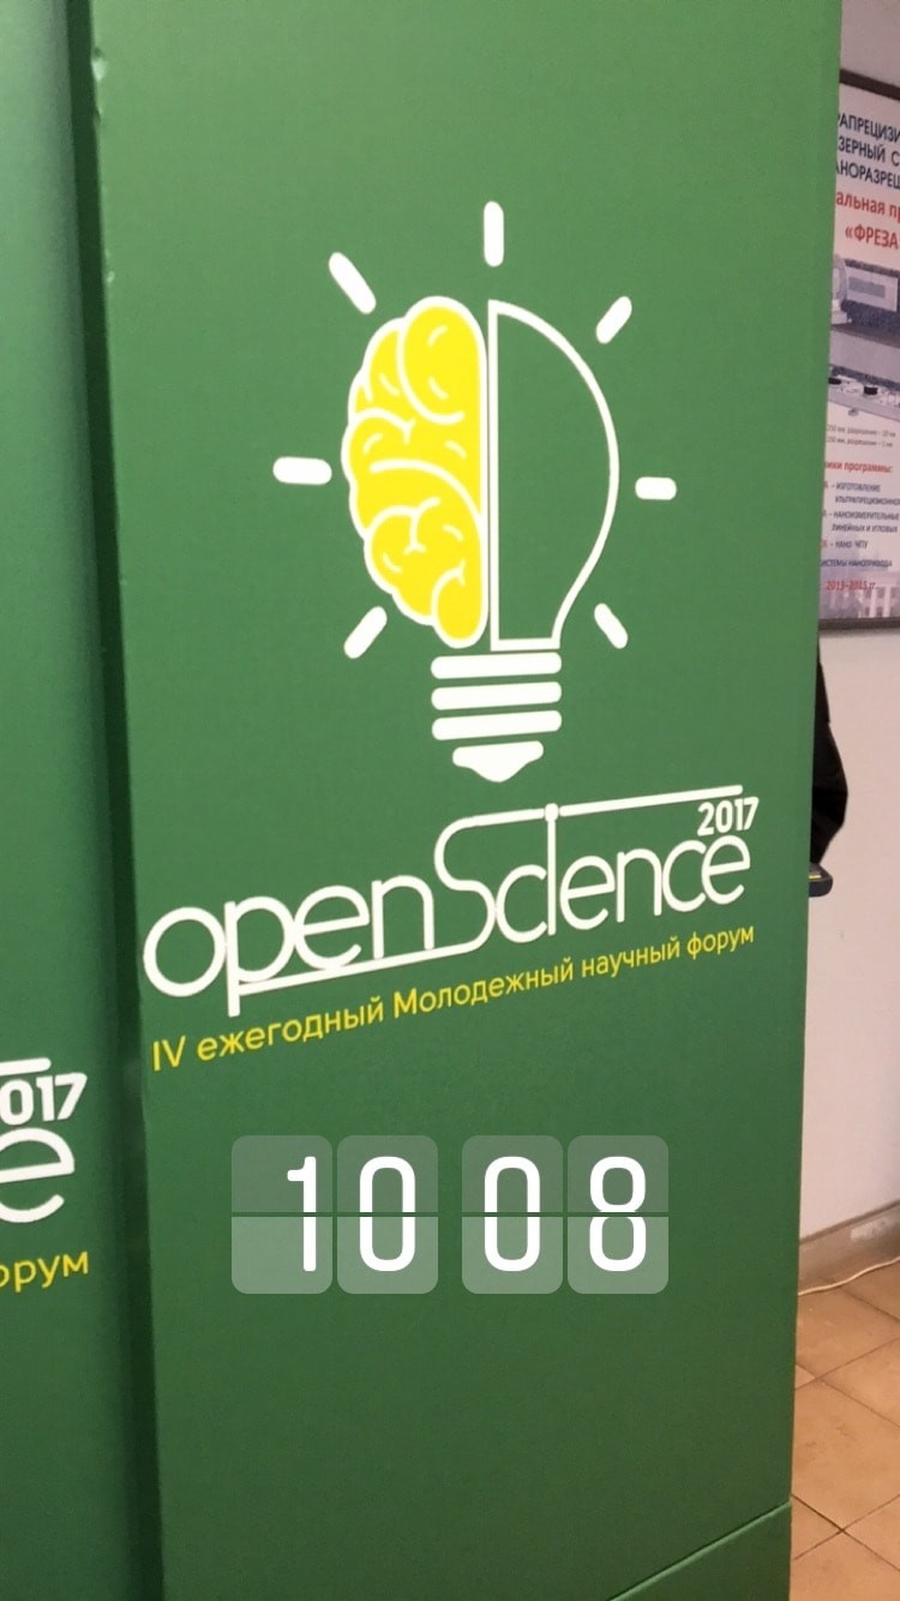 Форум Open Science -2017 в Гатчине - вклад  в национальную безопасность России